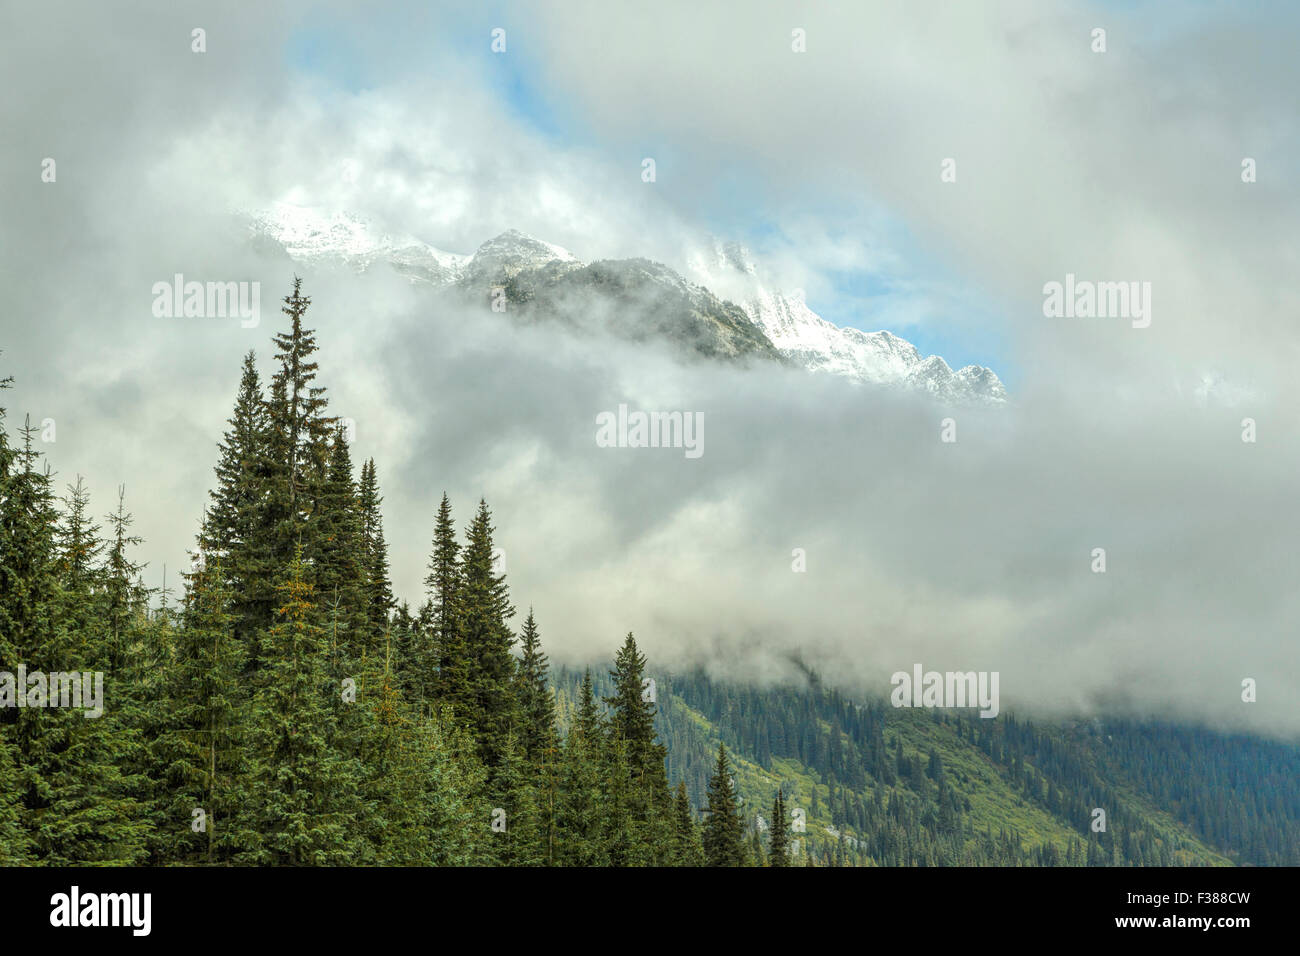 Neige fraîche sur les sommets des montagnes dans le parc national des Glaciers, Trans Canada Highway, Columbia Shuswap, Colombie-Britannique, Canada. Banque D'Images